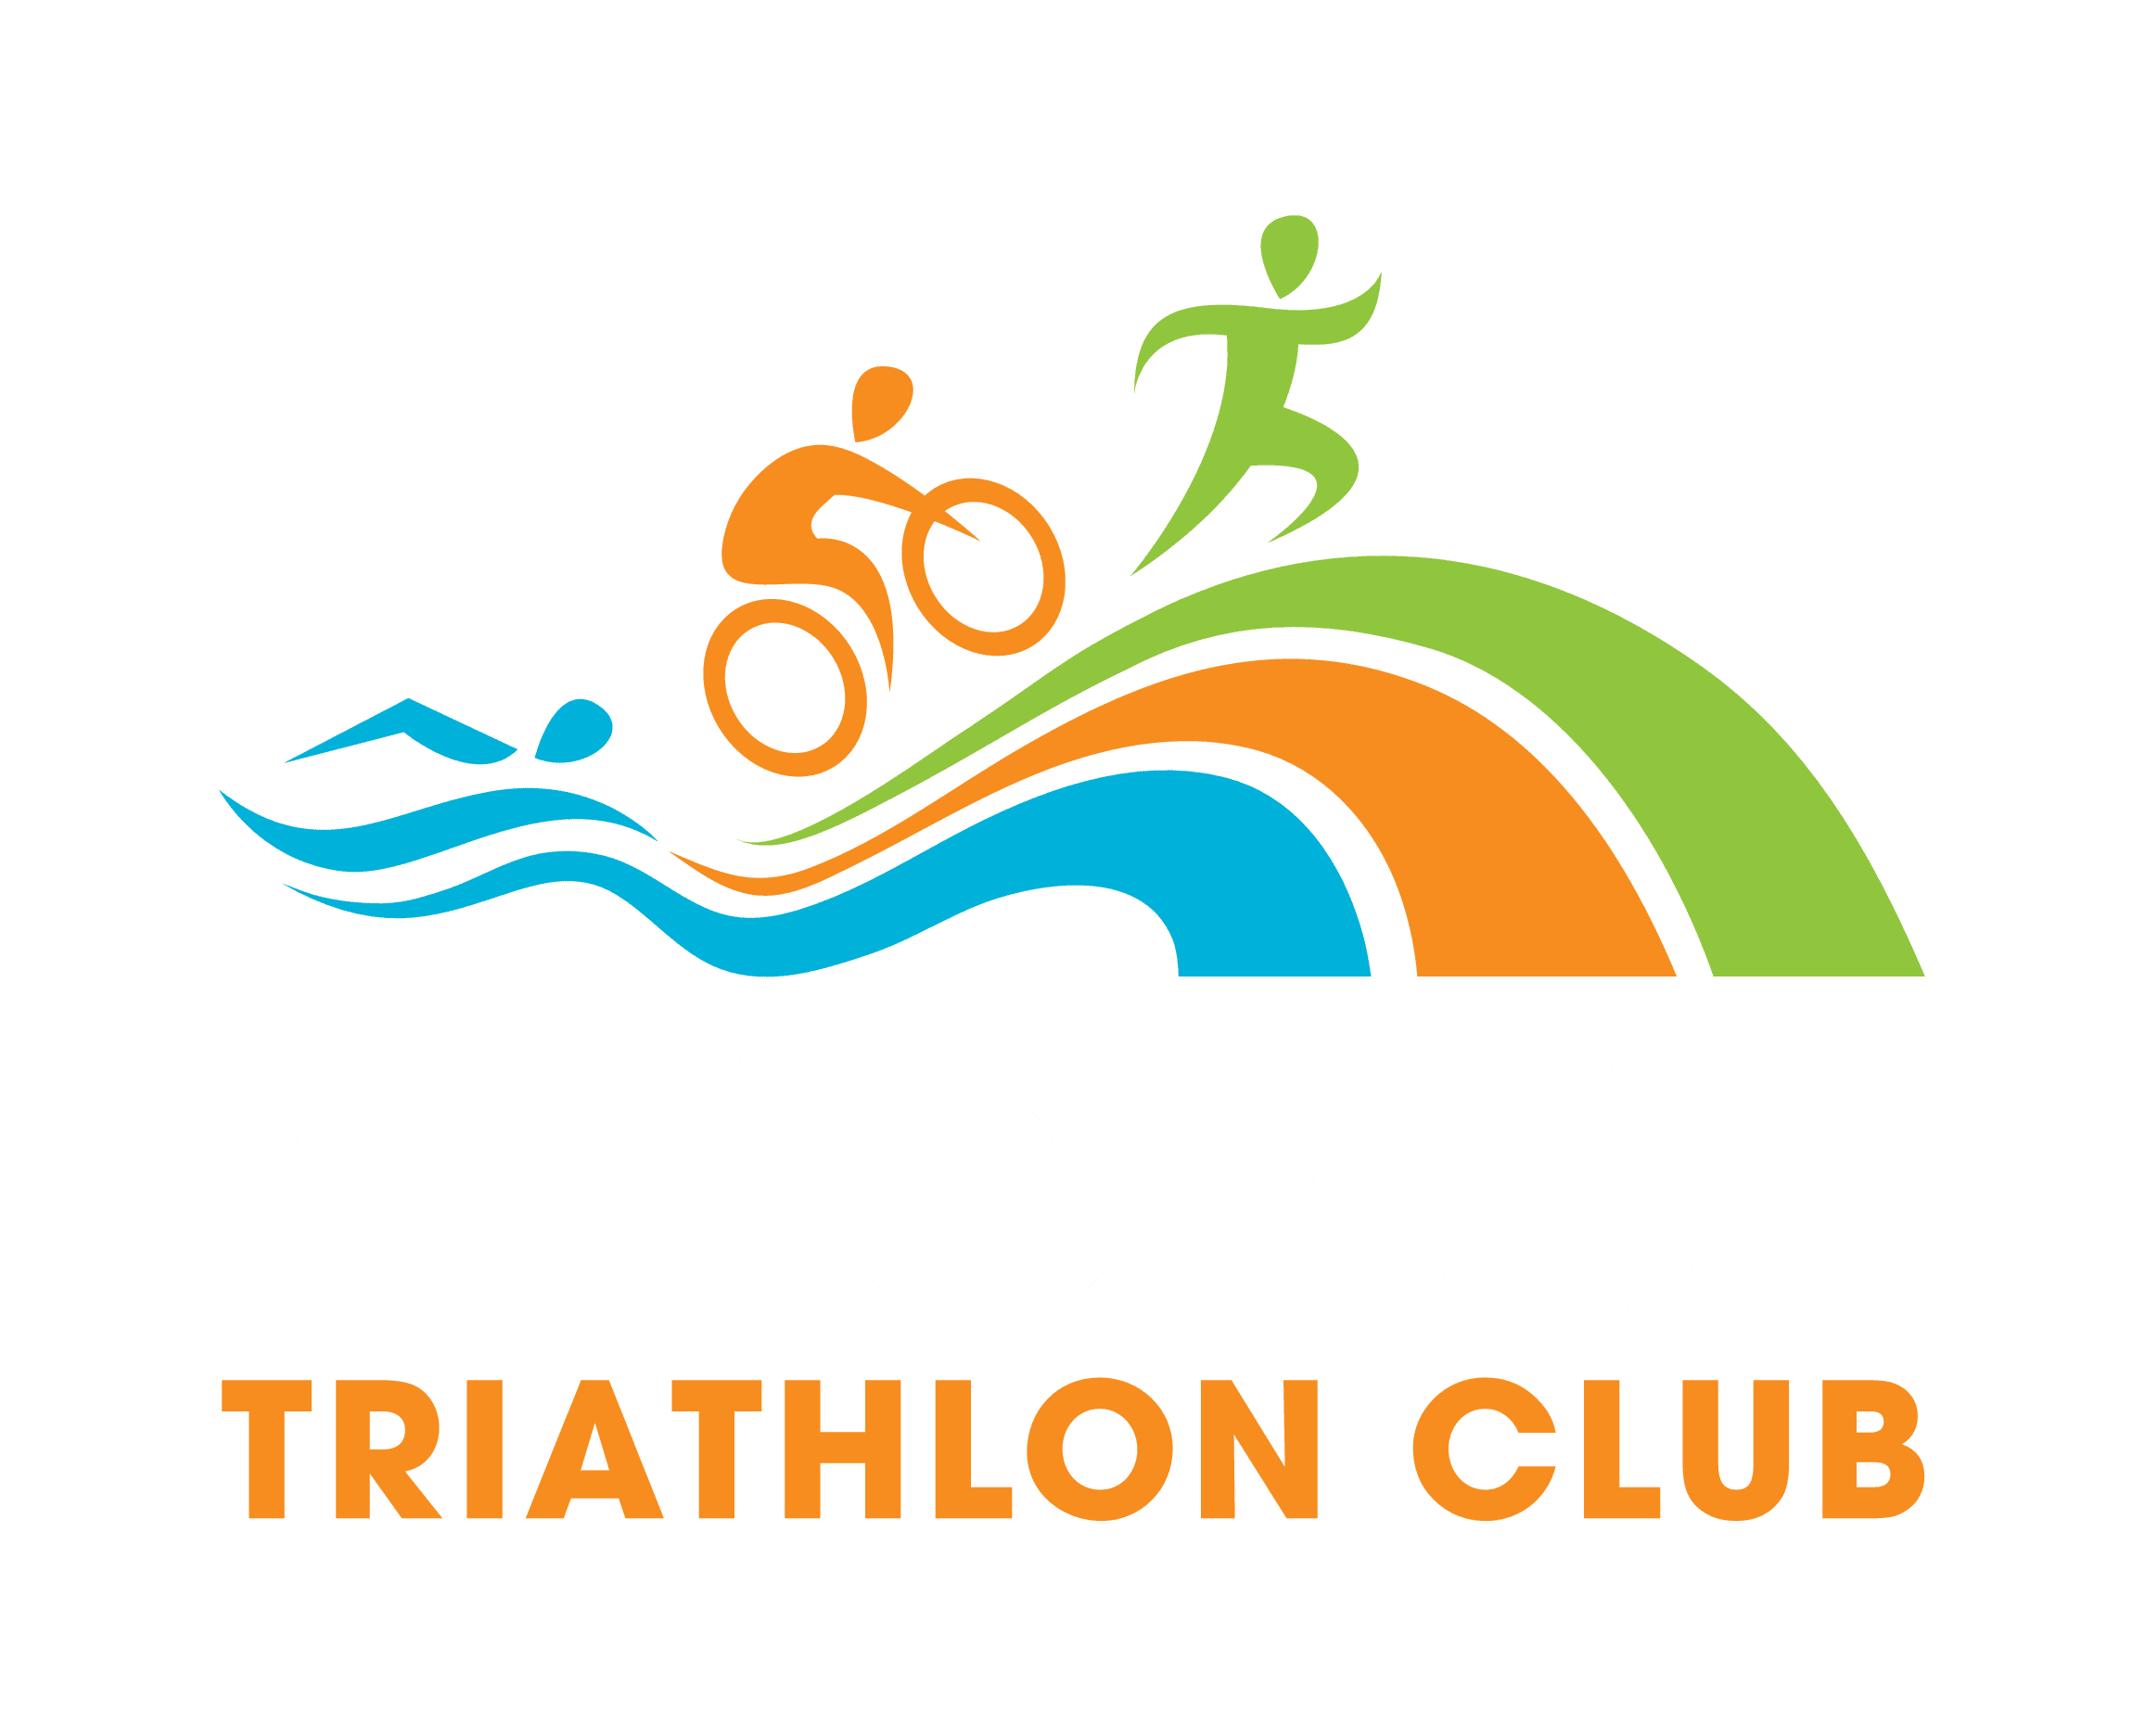 Mackay Triathlon Club